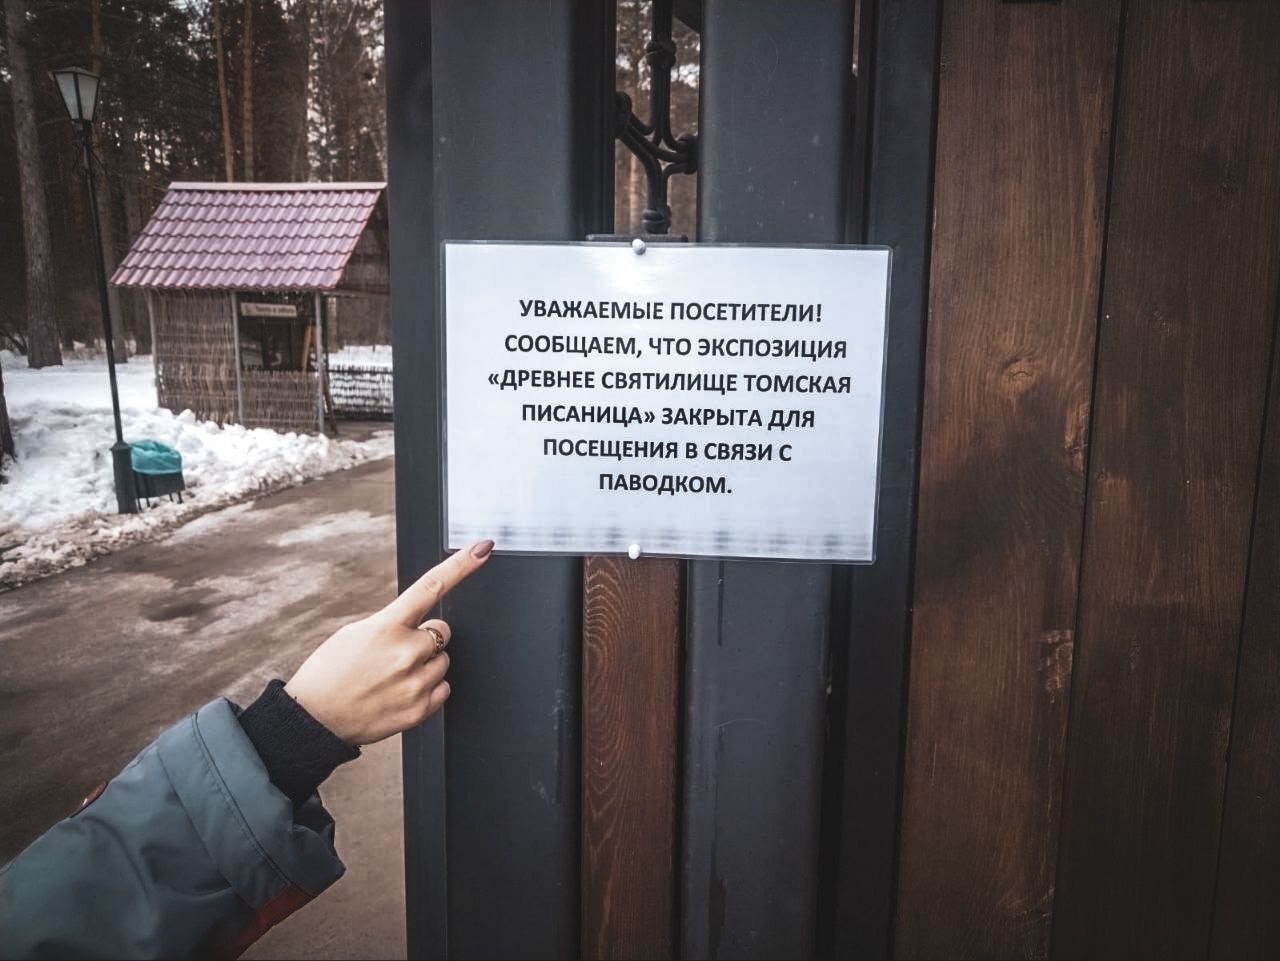 В музее «Томская Писаница» закрыли для посещения скалу с петроглифами